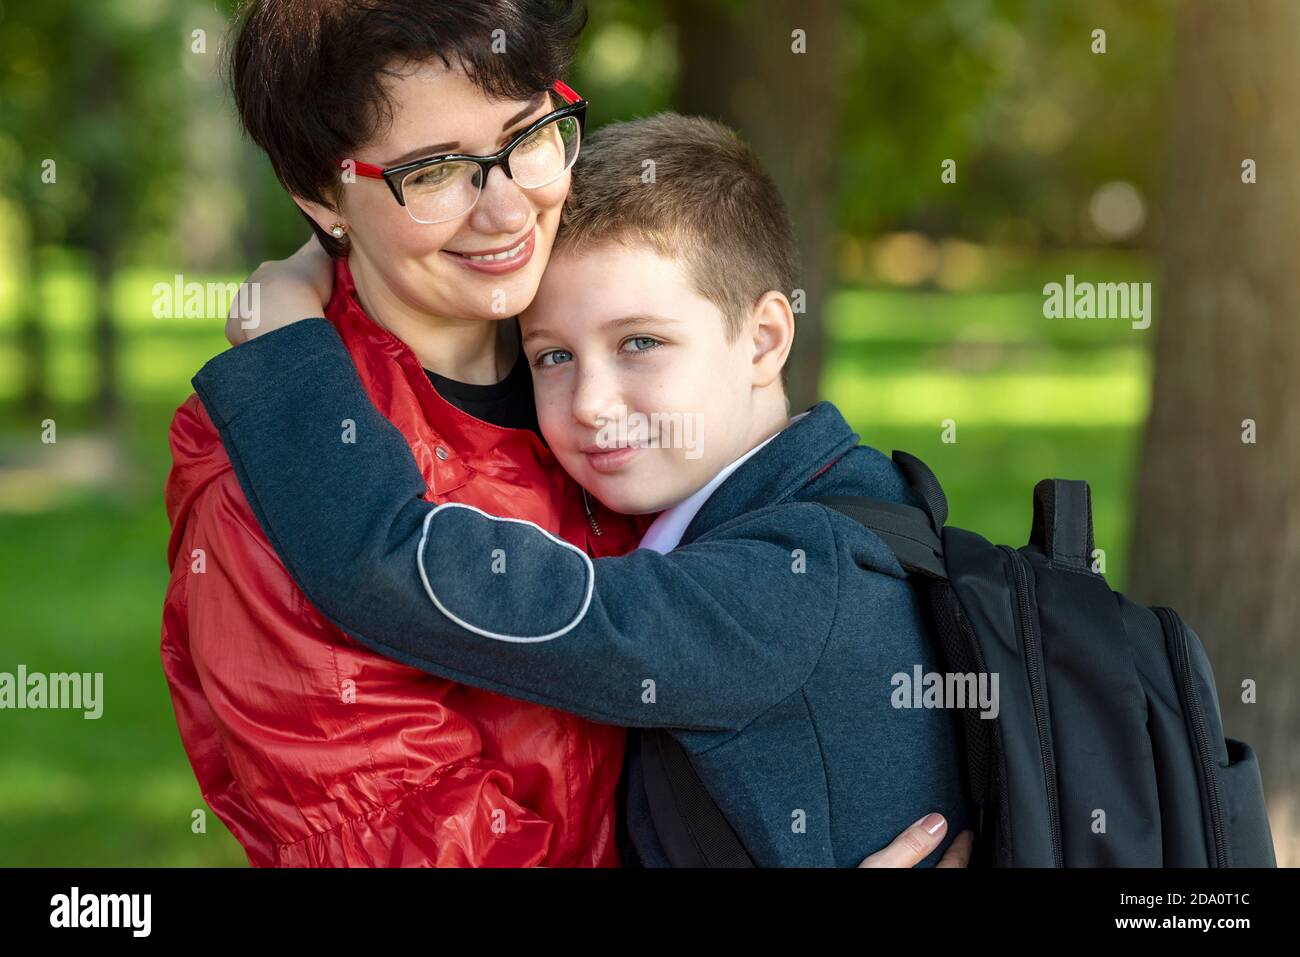 Mamma e figlio felici si abbracciano. Amore materno, parenting, rapporti familiari di fiducia. Foto Stock